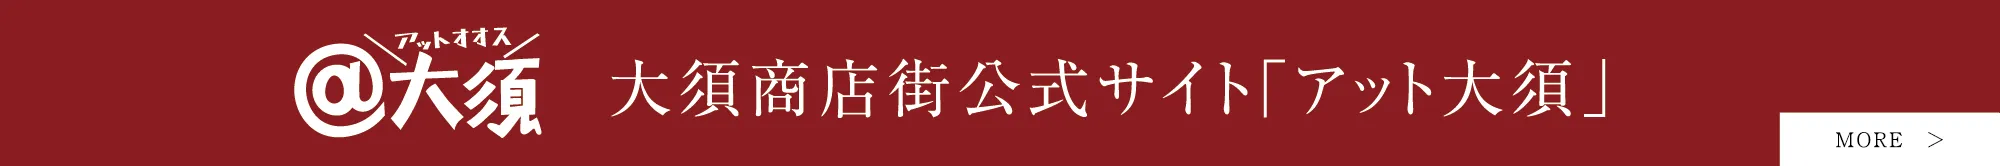 大須商店街公式サイト「アット大須」